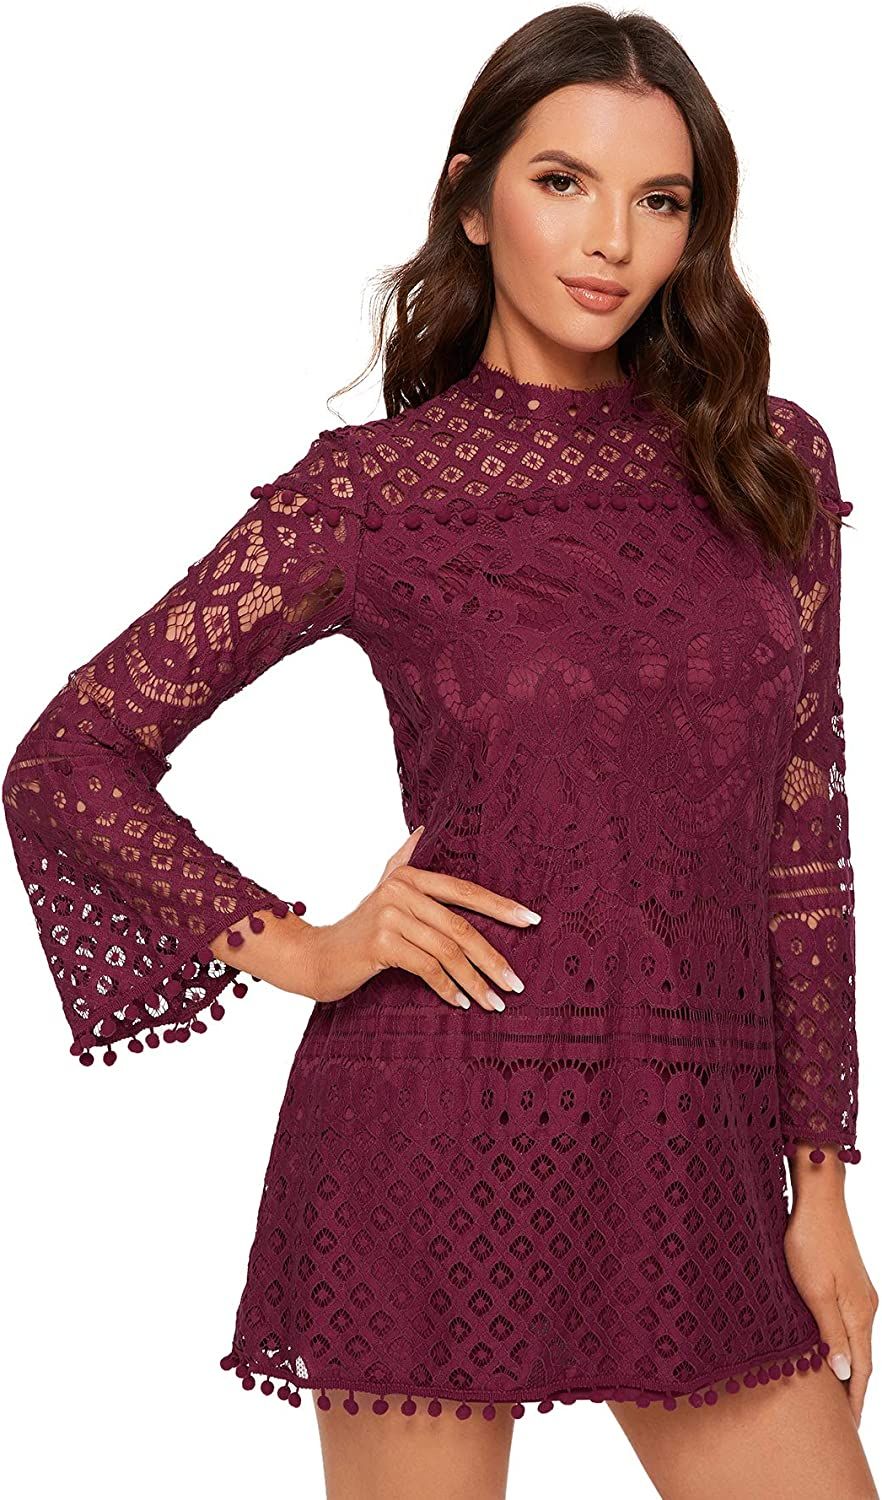 SheIn Women's Crochet Pom-pom Sheer Lace Bell Sleeve Dress | Amazon (US)